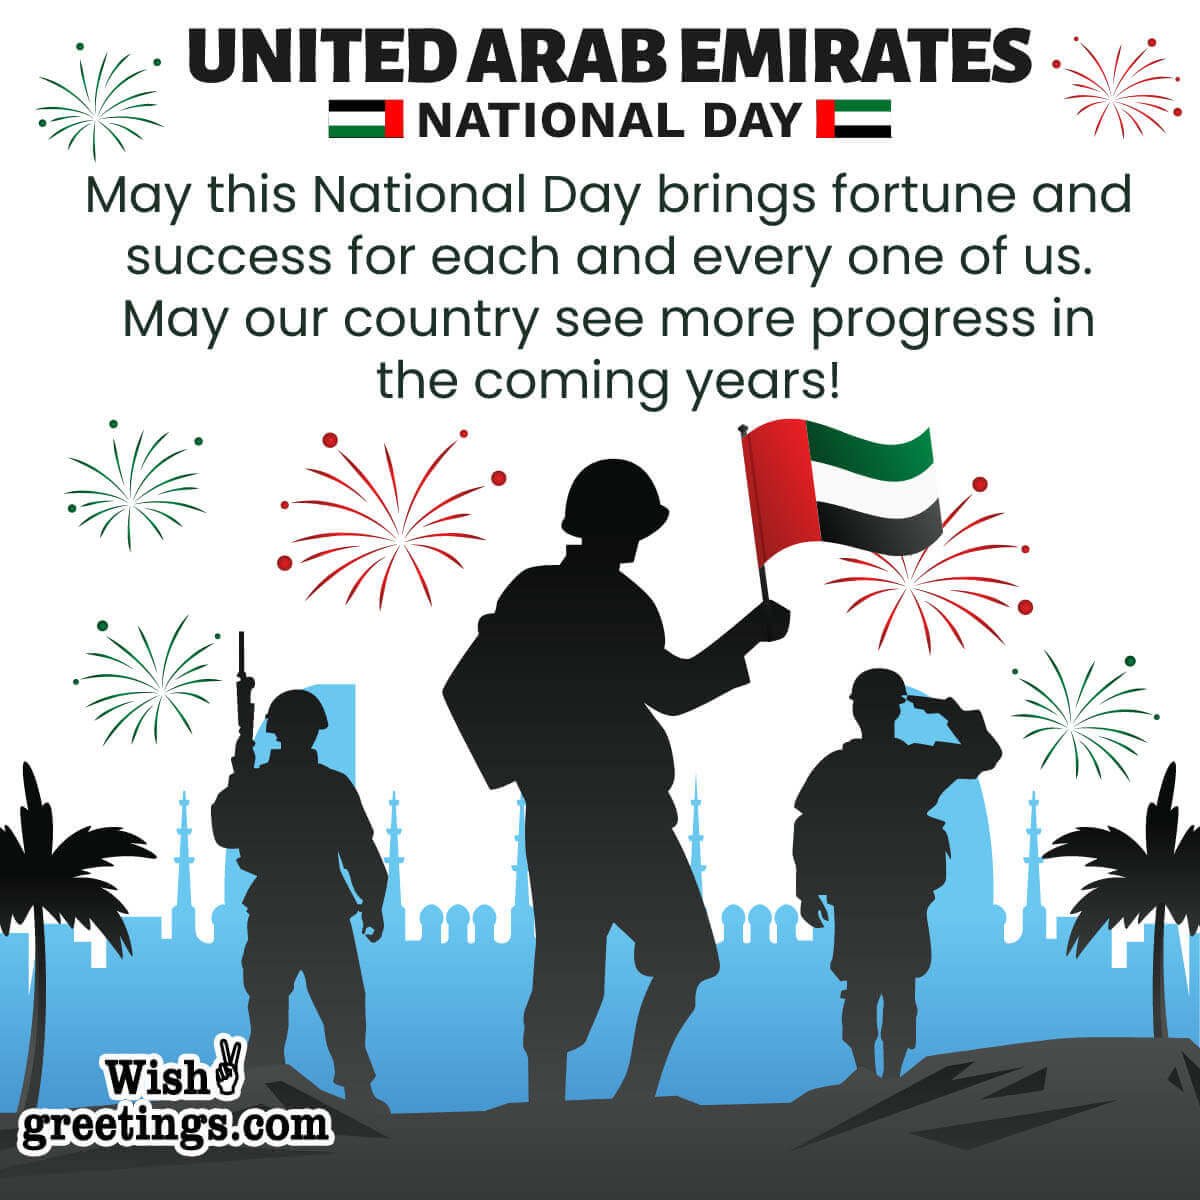 Happy United Arab Emirates National Day